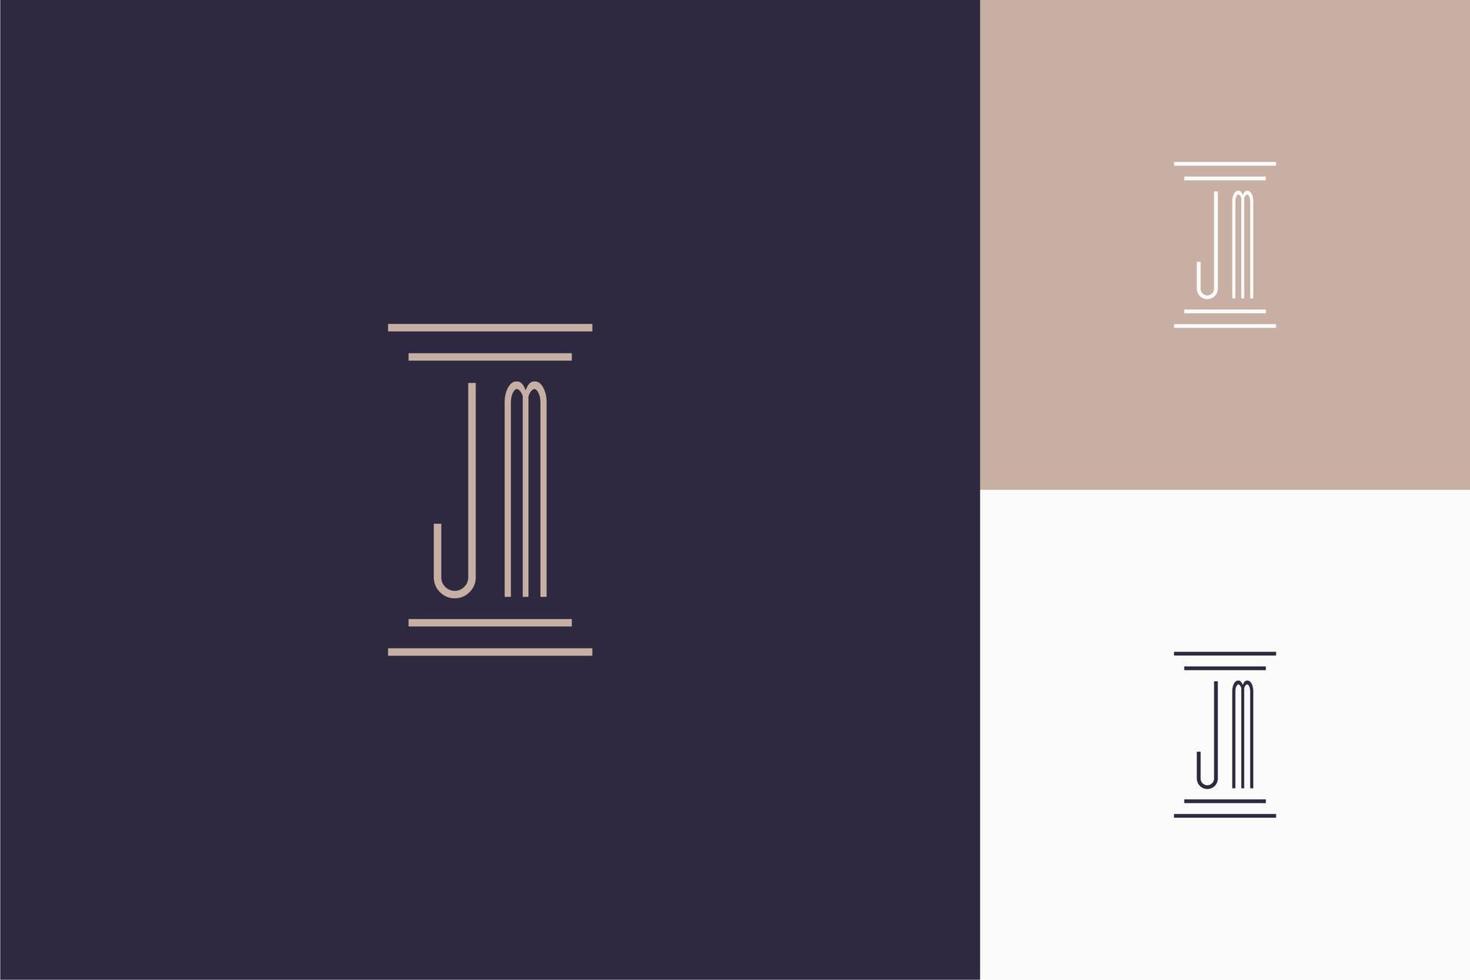 jm monogram initialer design för advokatbyråns logotyp vektor